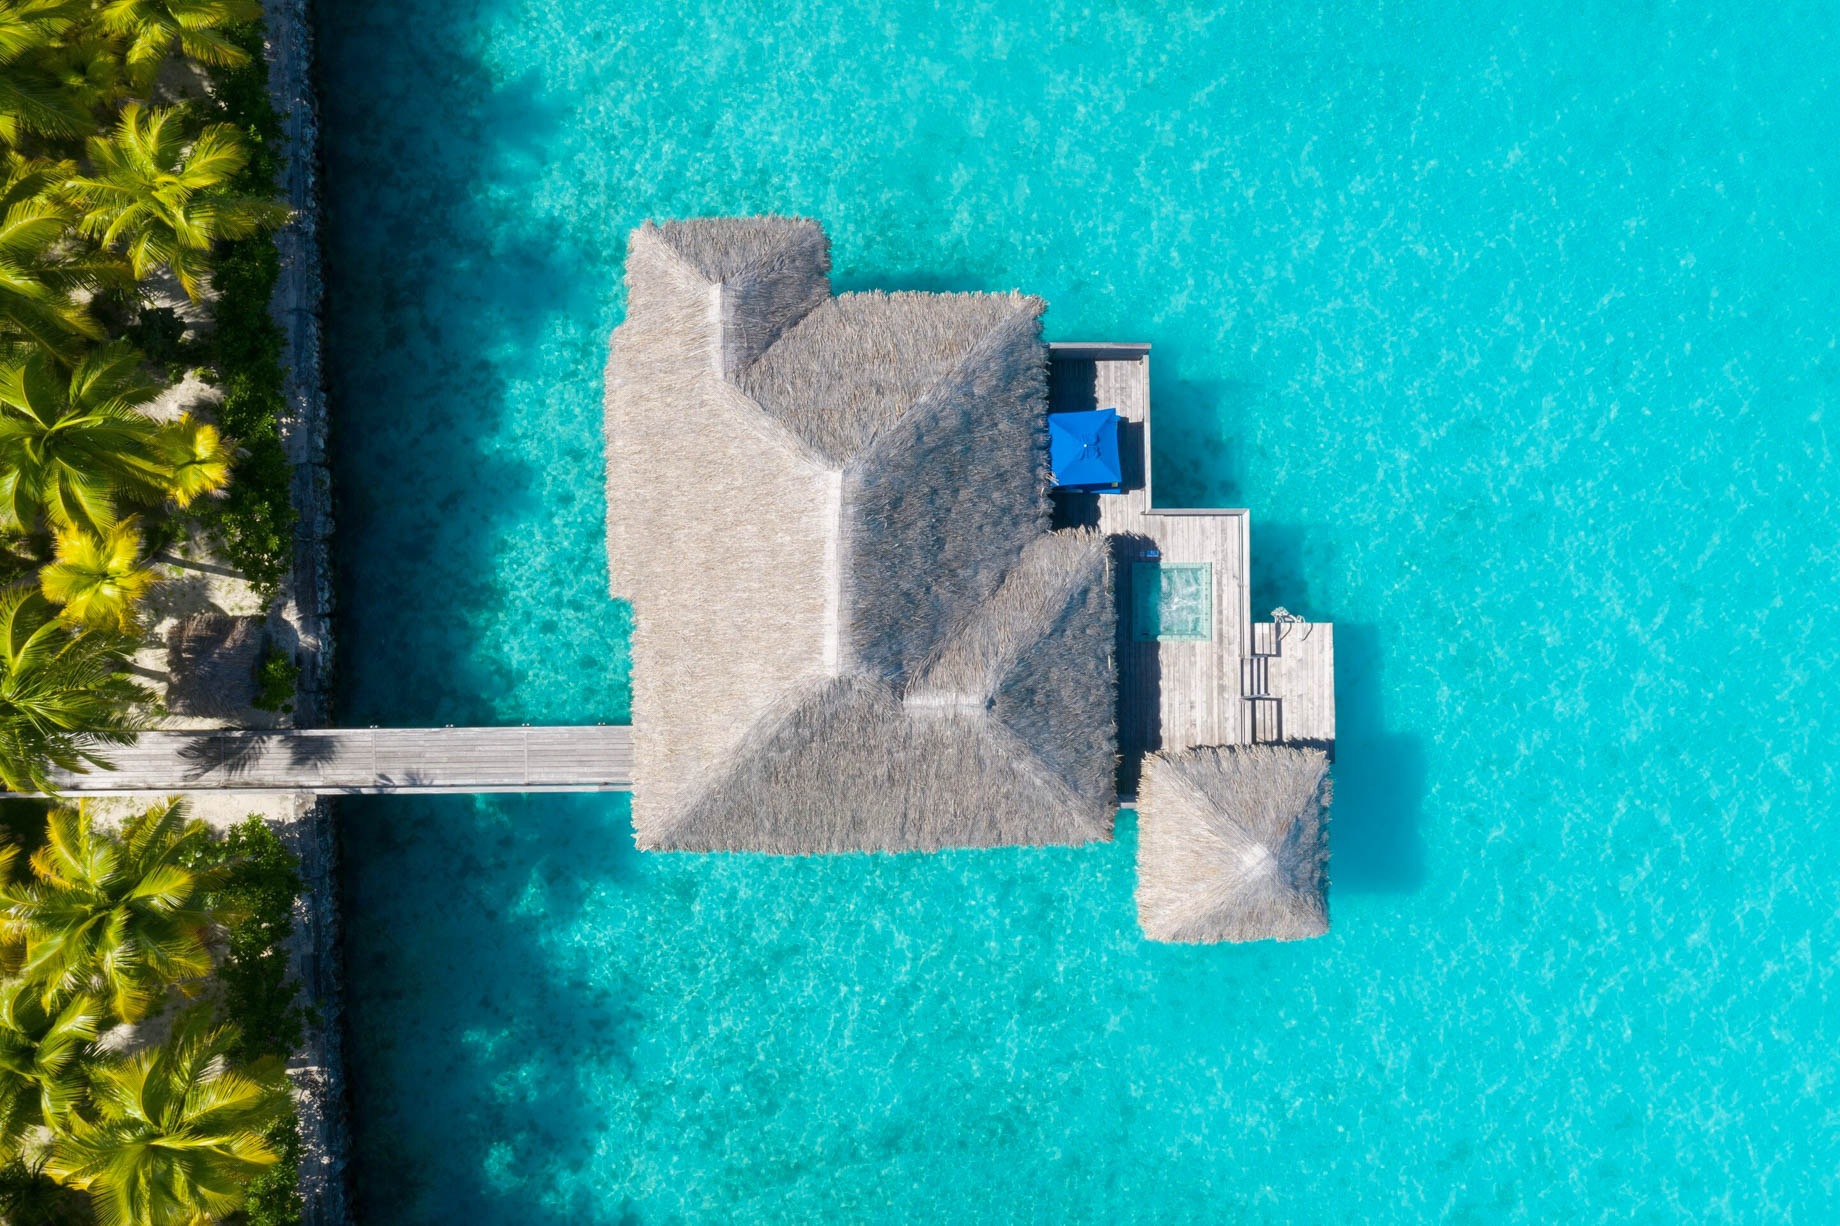 The St. Regis Bora Bora Resort - Bora Bora, French Polynesia - Overwater Premier Suite Villa Overhead